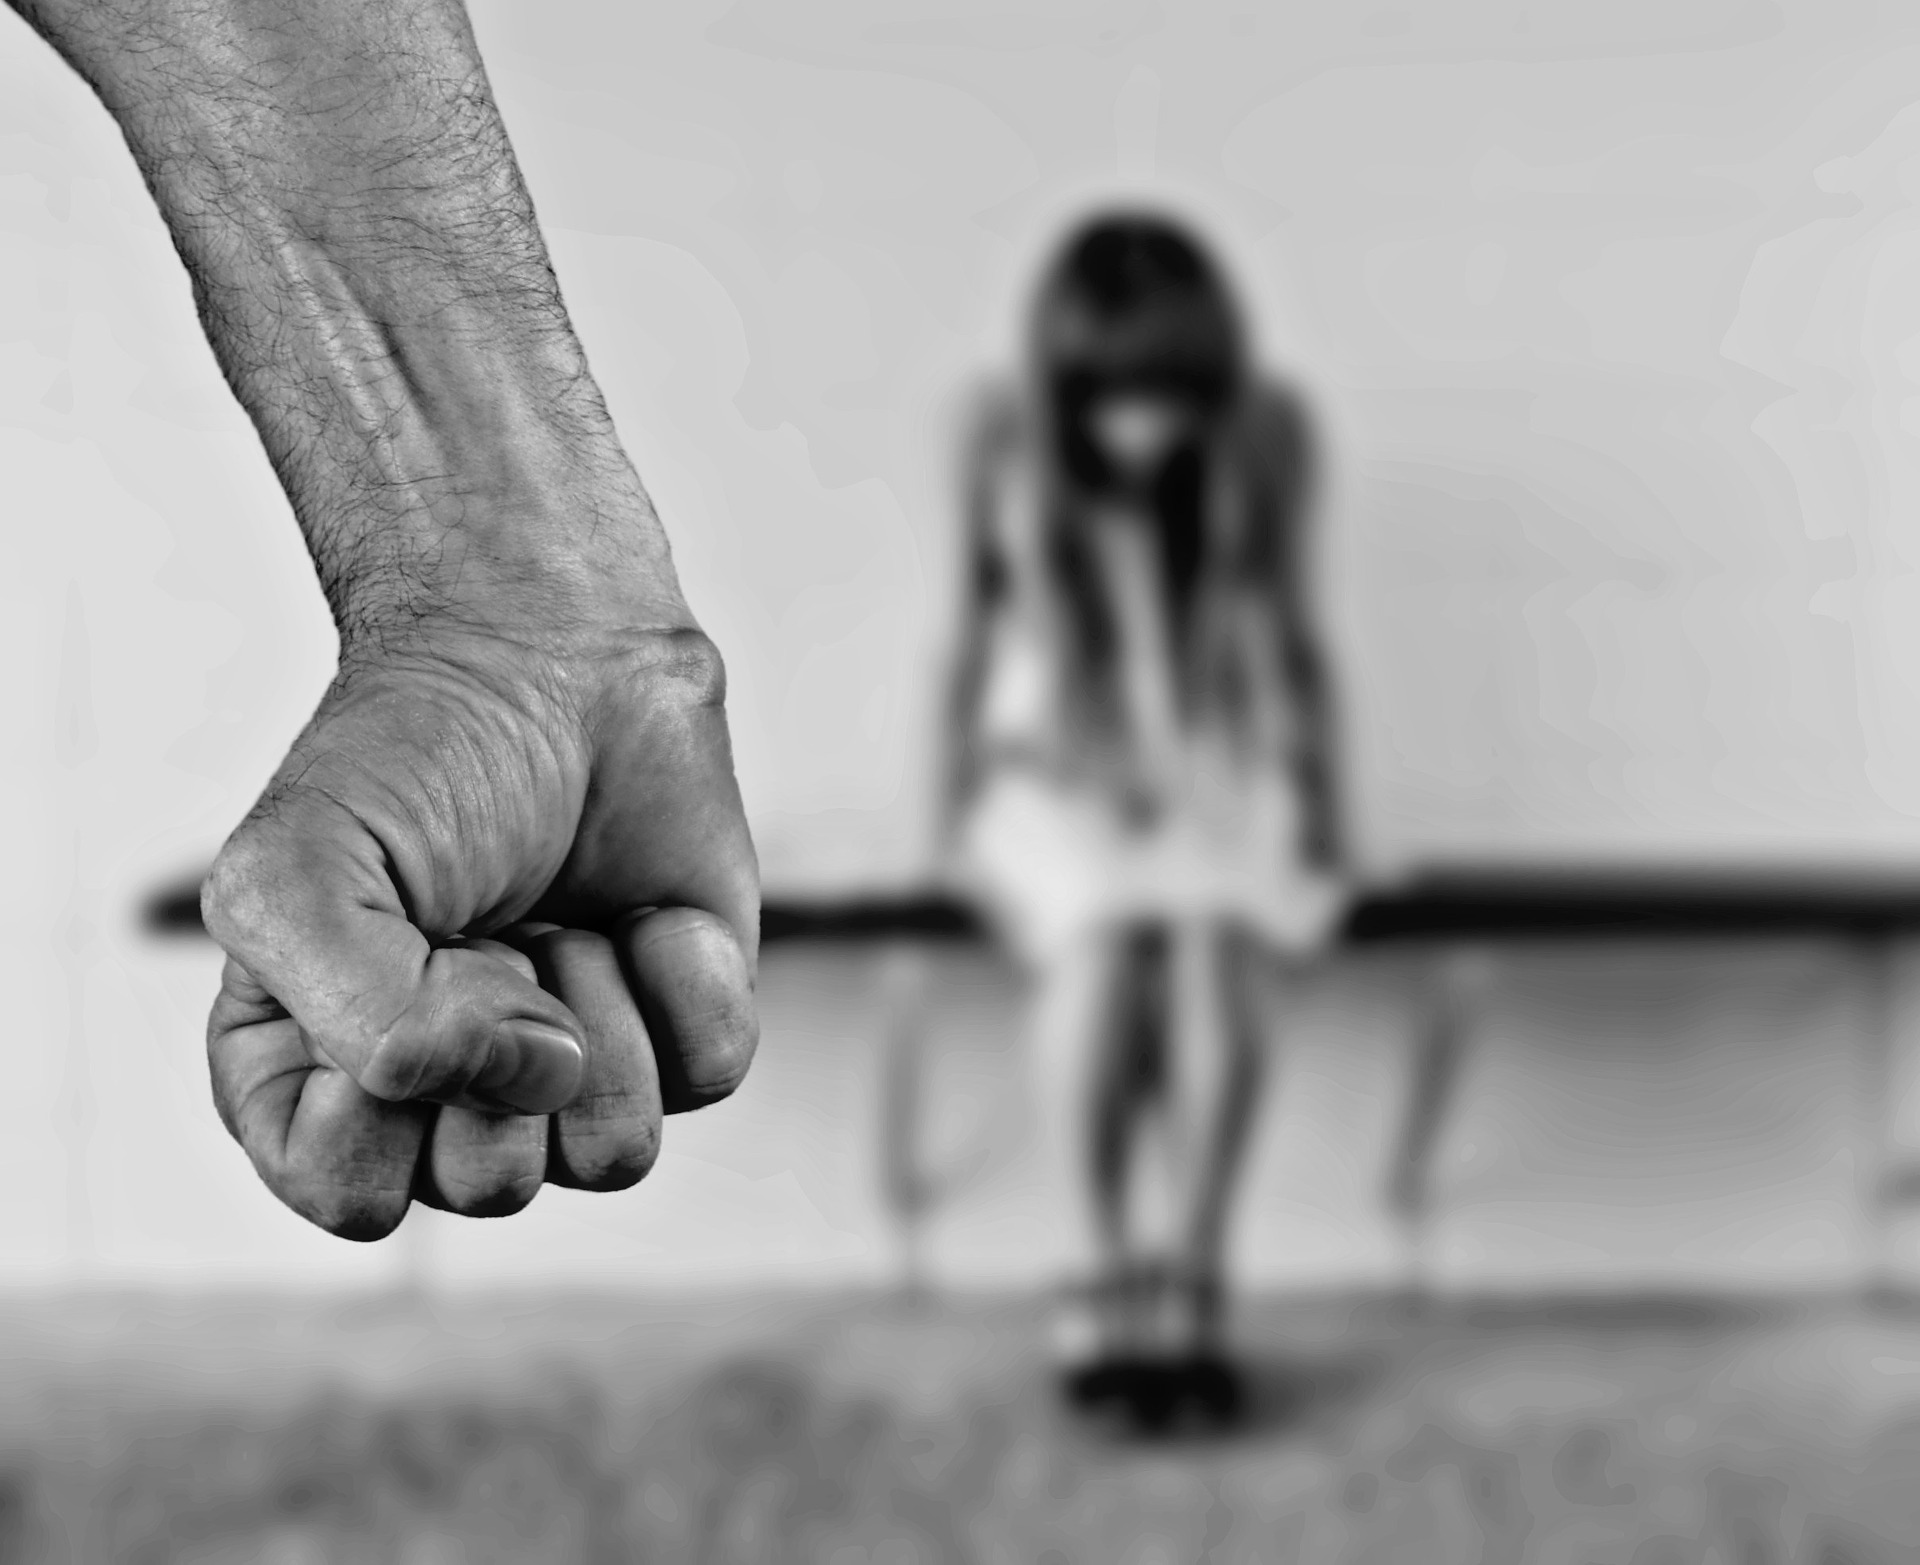 Hallan muerto en su casa a un profesor que fue acusado de abusos sexuales a menores. (Foto Prensa Libre: Pixabay)
